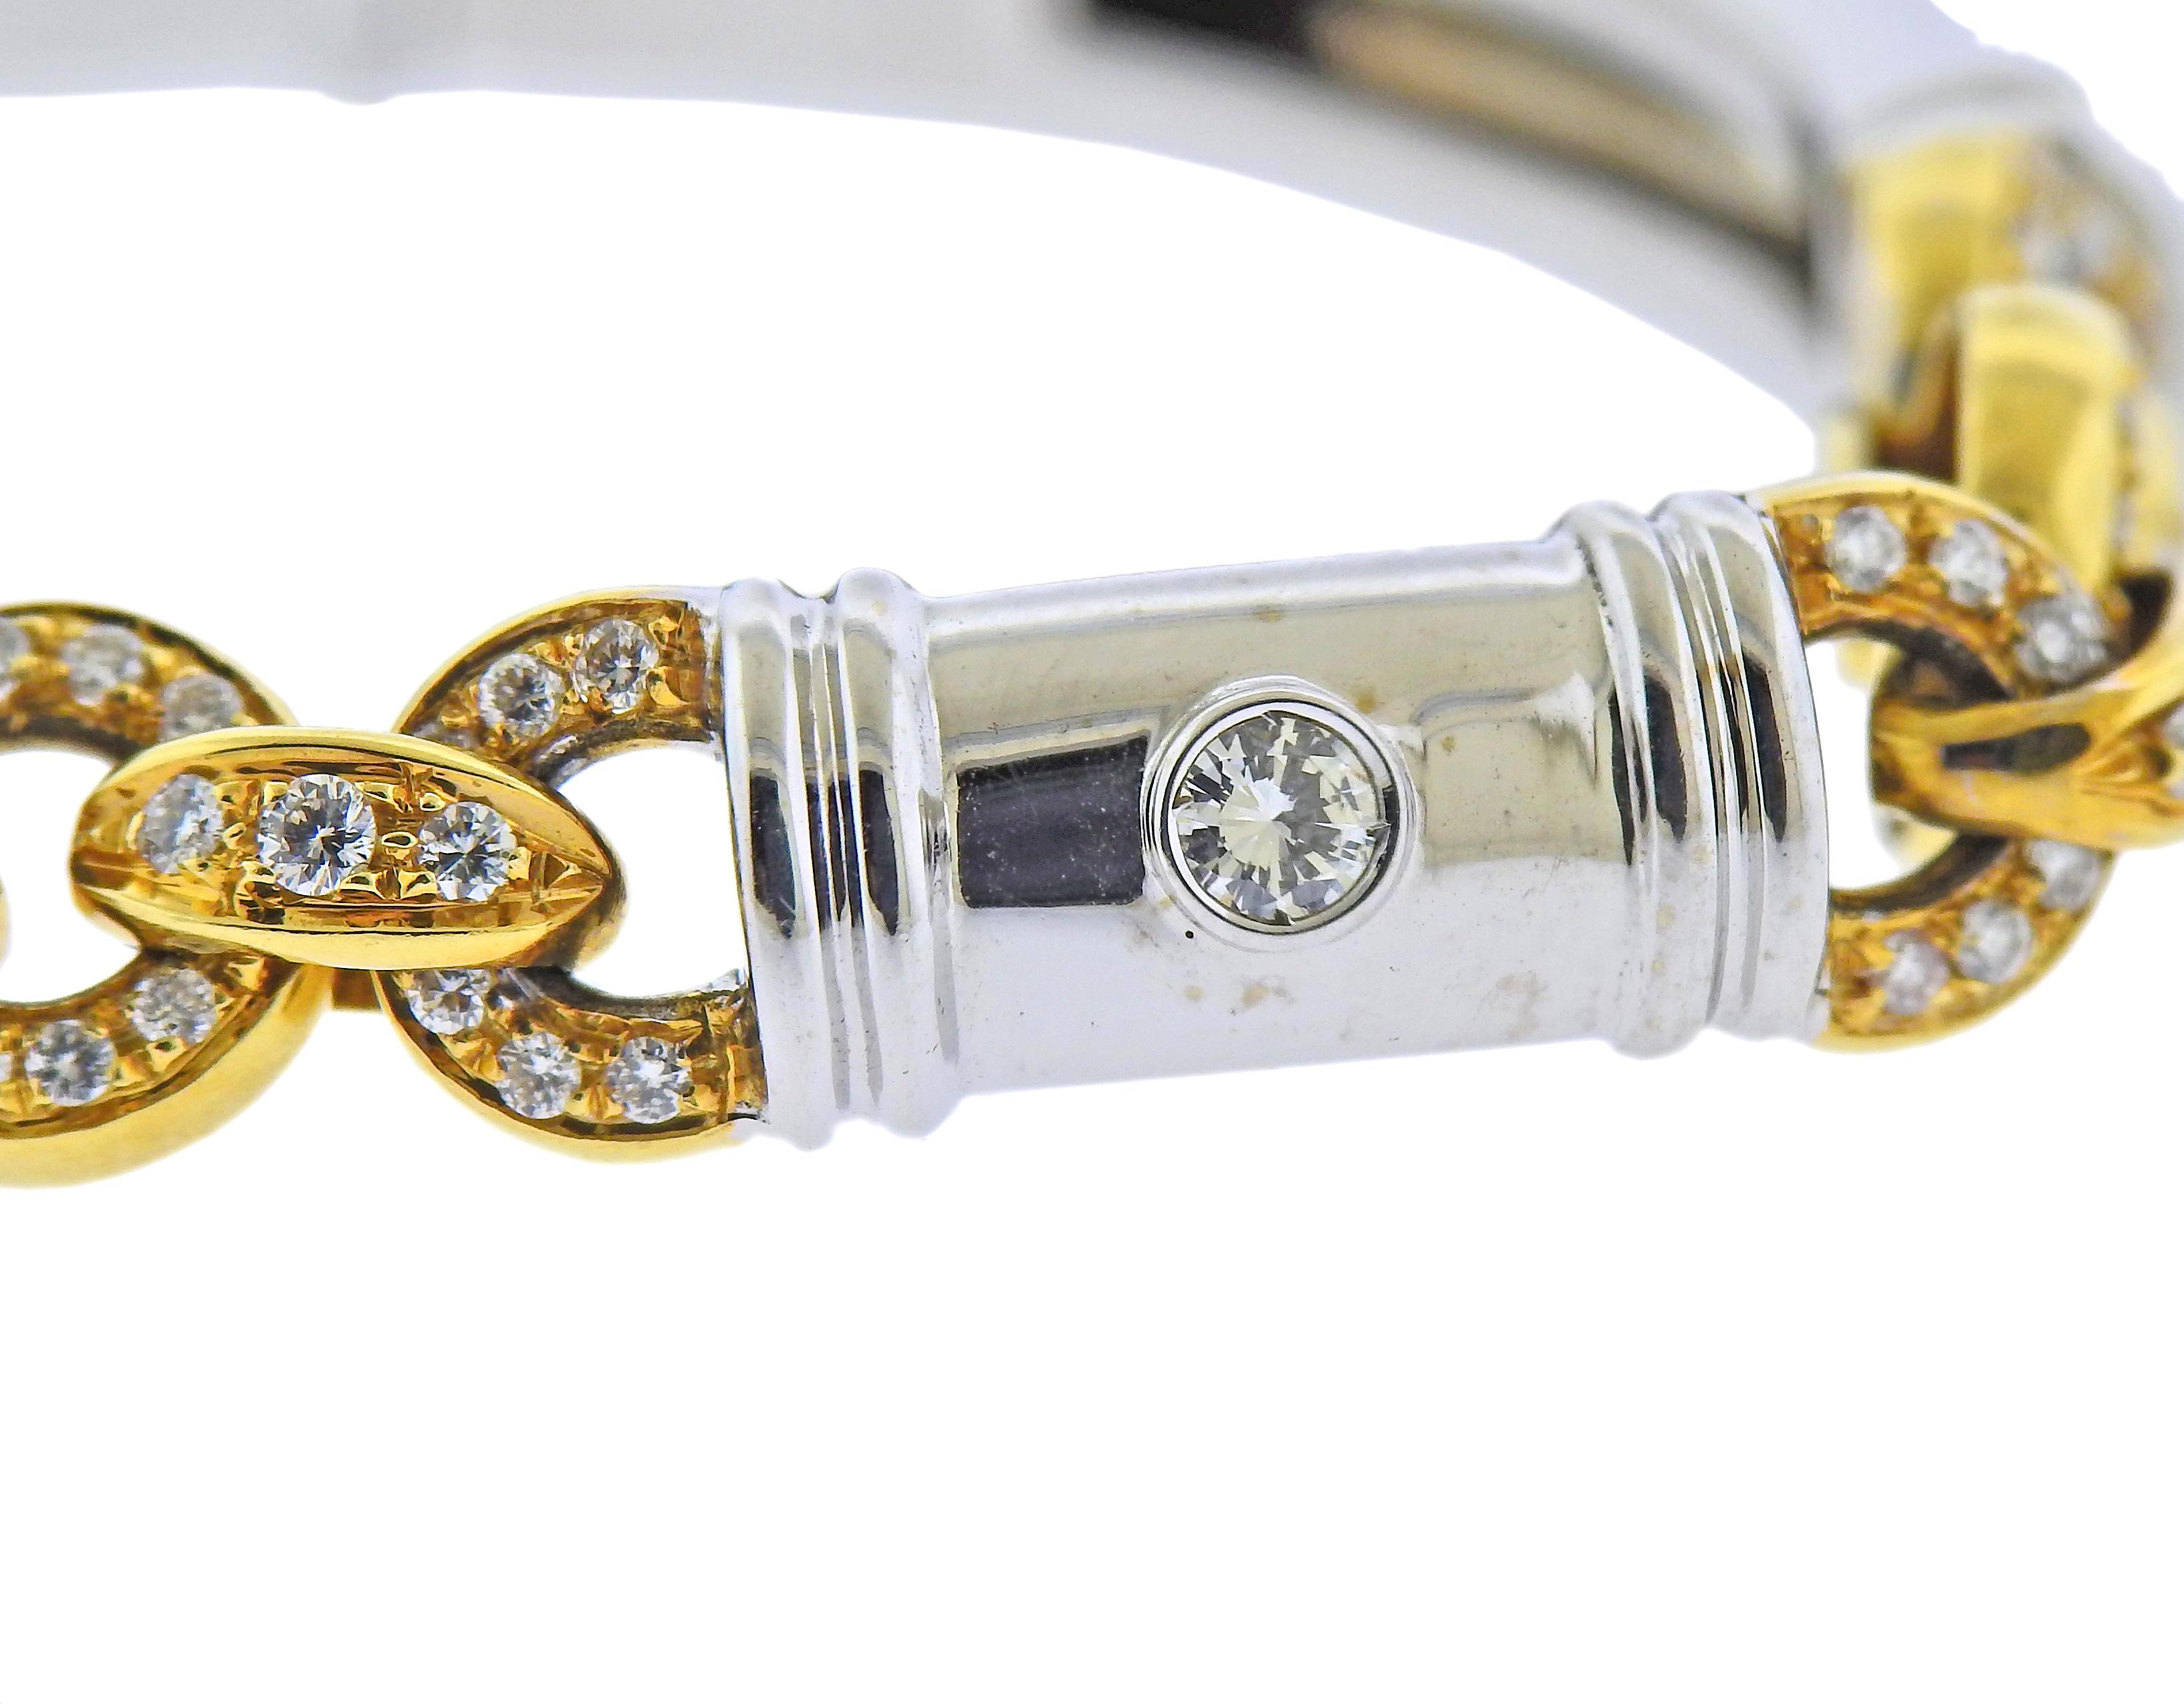 Bracelet en or bicolore 18k, avec environ 1,10ctw de diamants. Le bracelet mesure 6,75